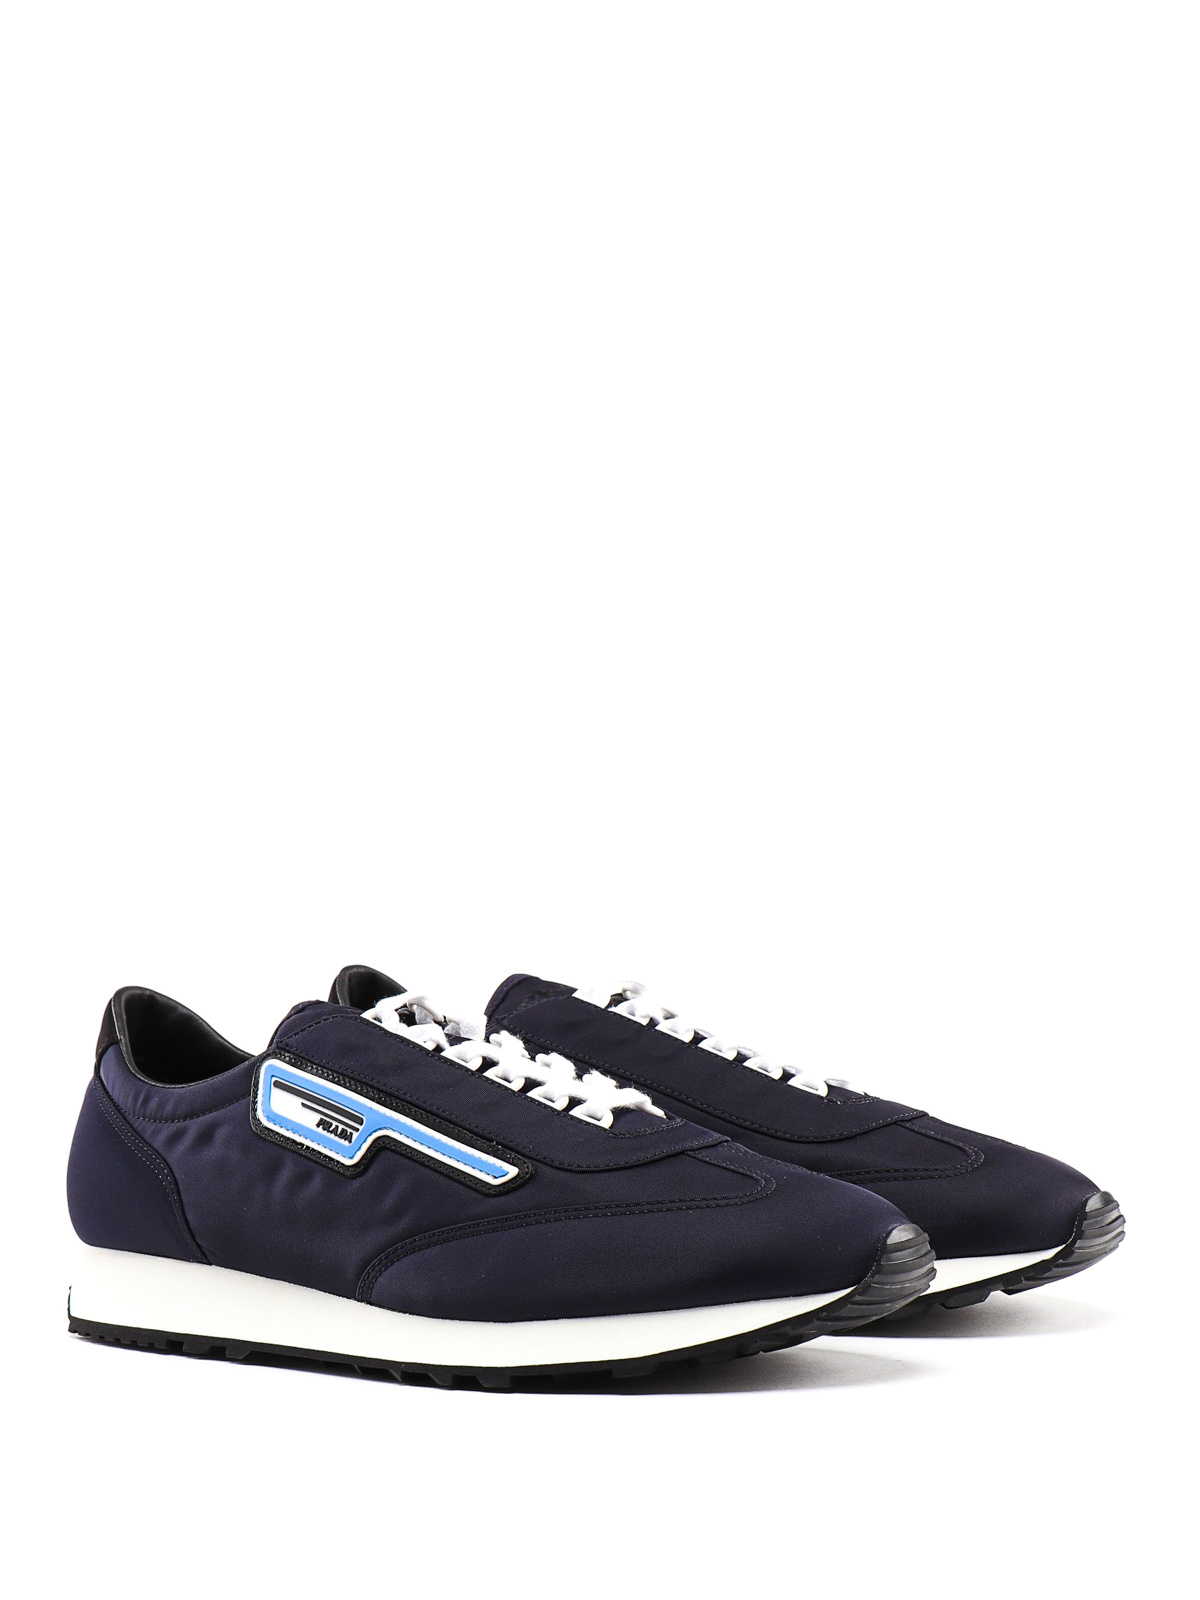 Prada - Milano 70 blue sneakers 